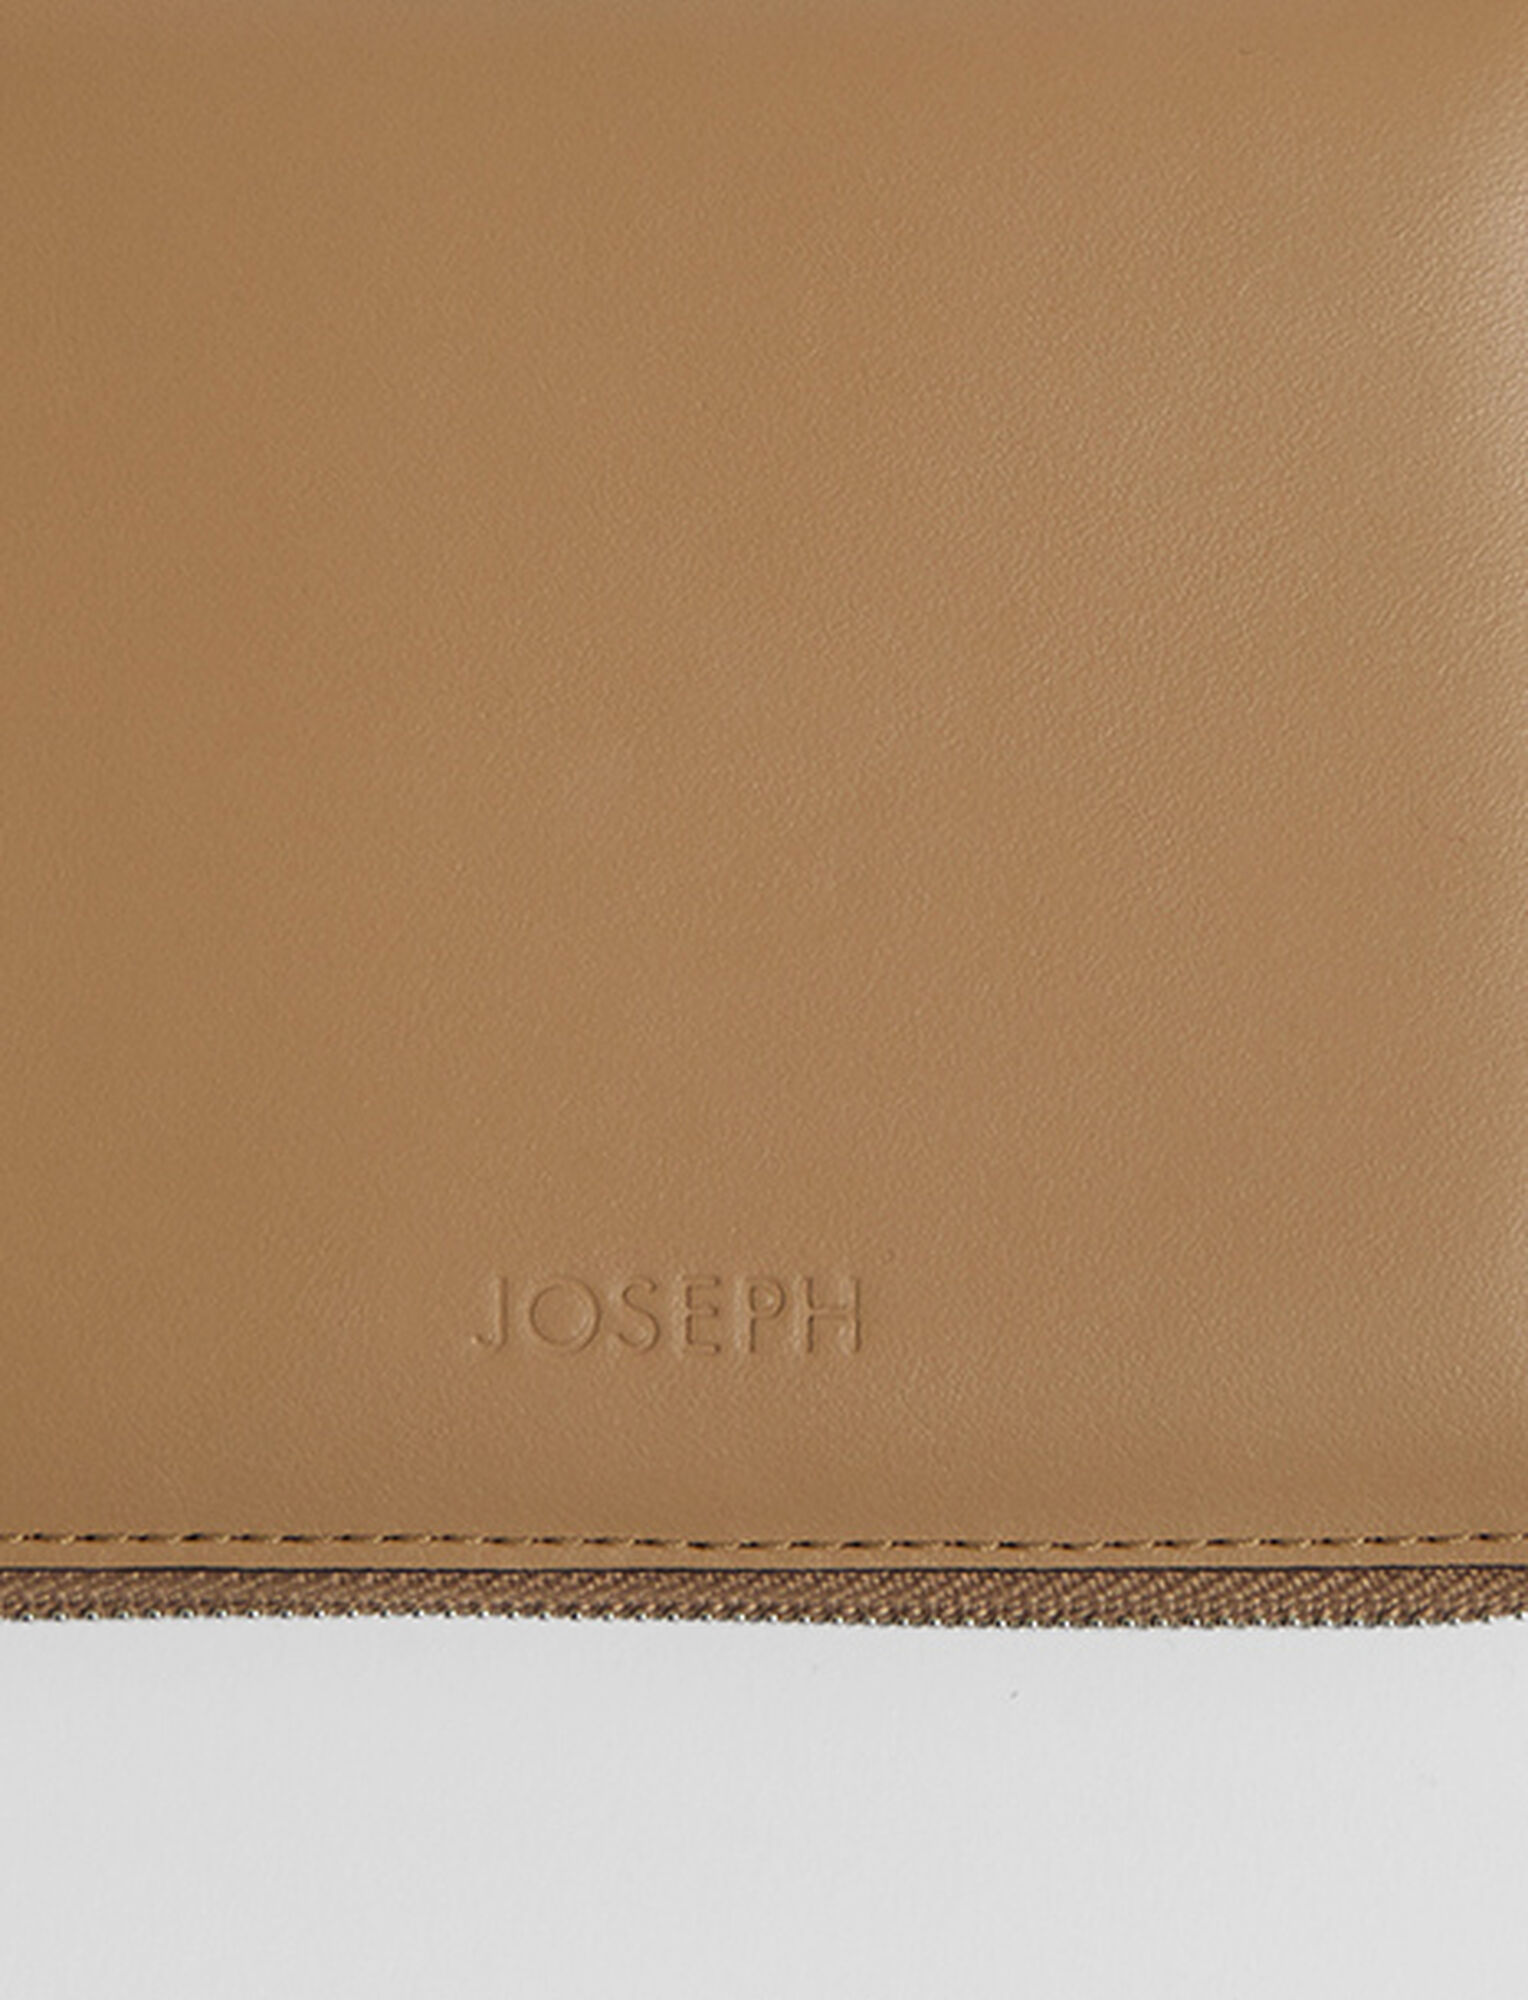 Joseph, Leather Strap Zip Wallet, in Almond